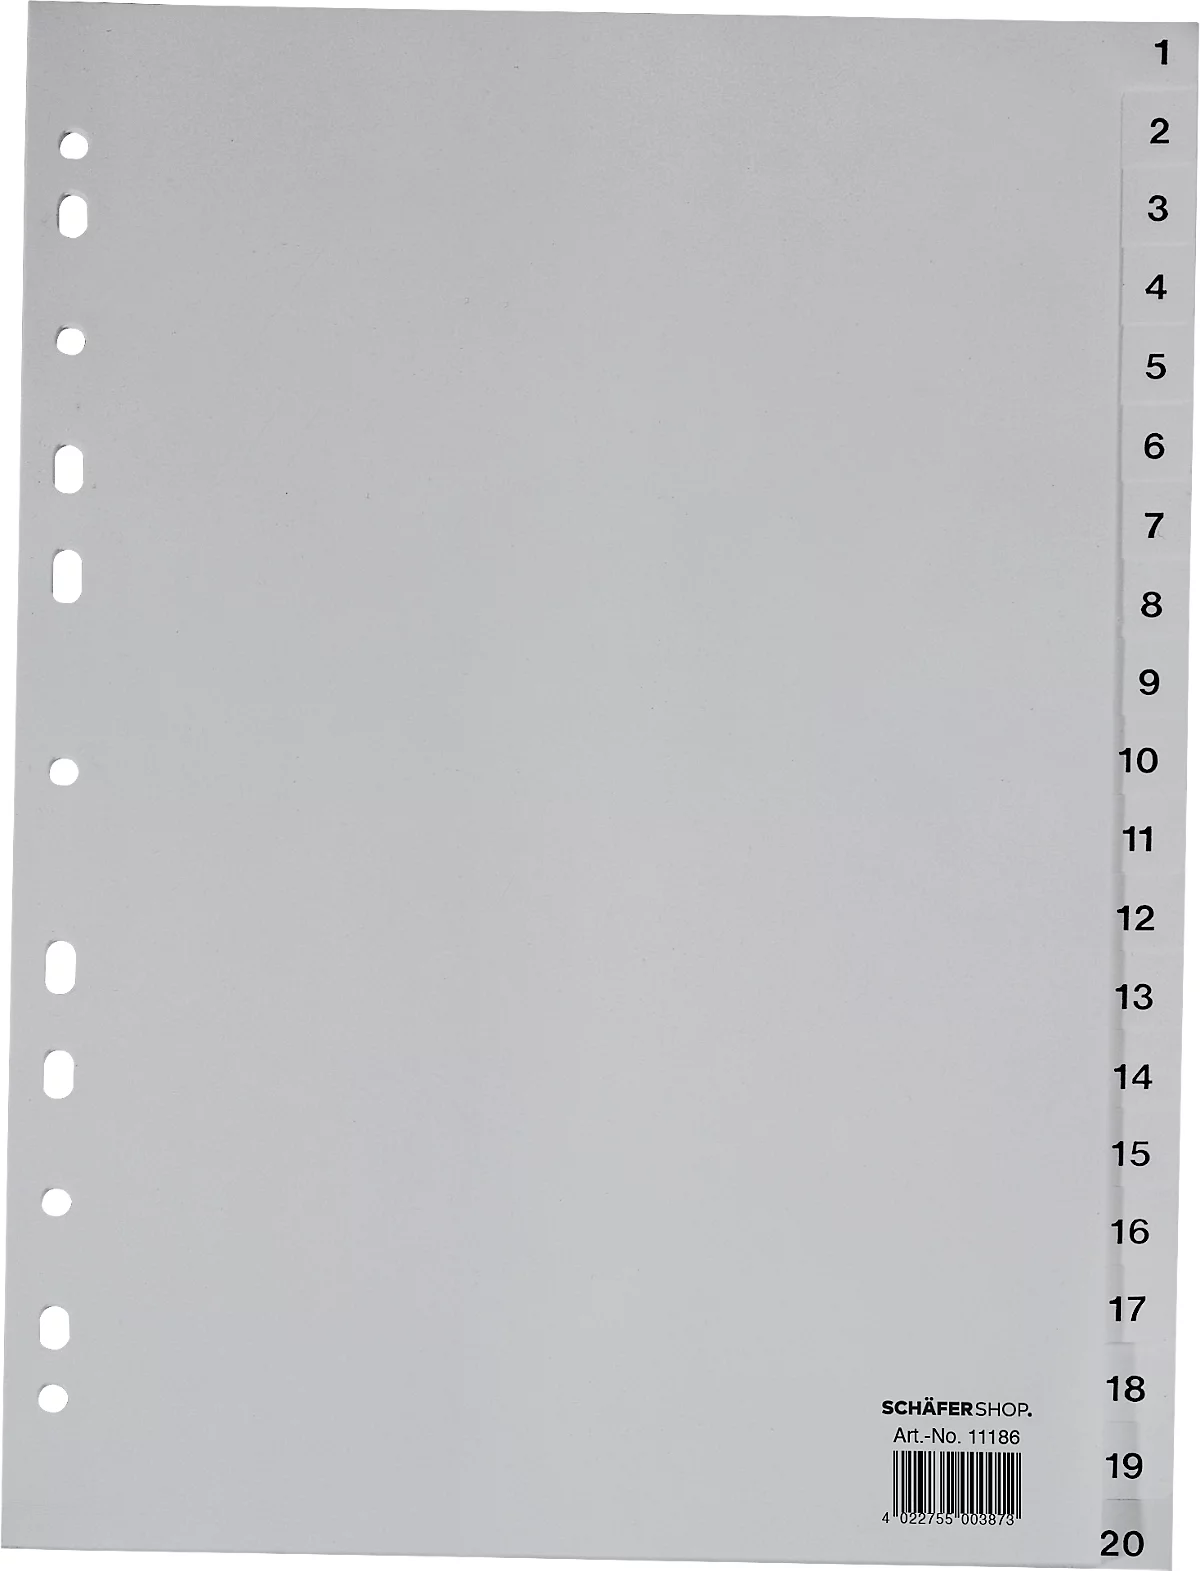 Schäfer Shop Select PP ordner-indexbladen, A4-formaat, cijfers 1-20, grijs